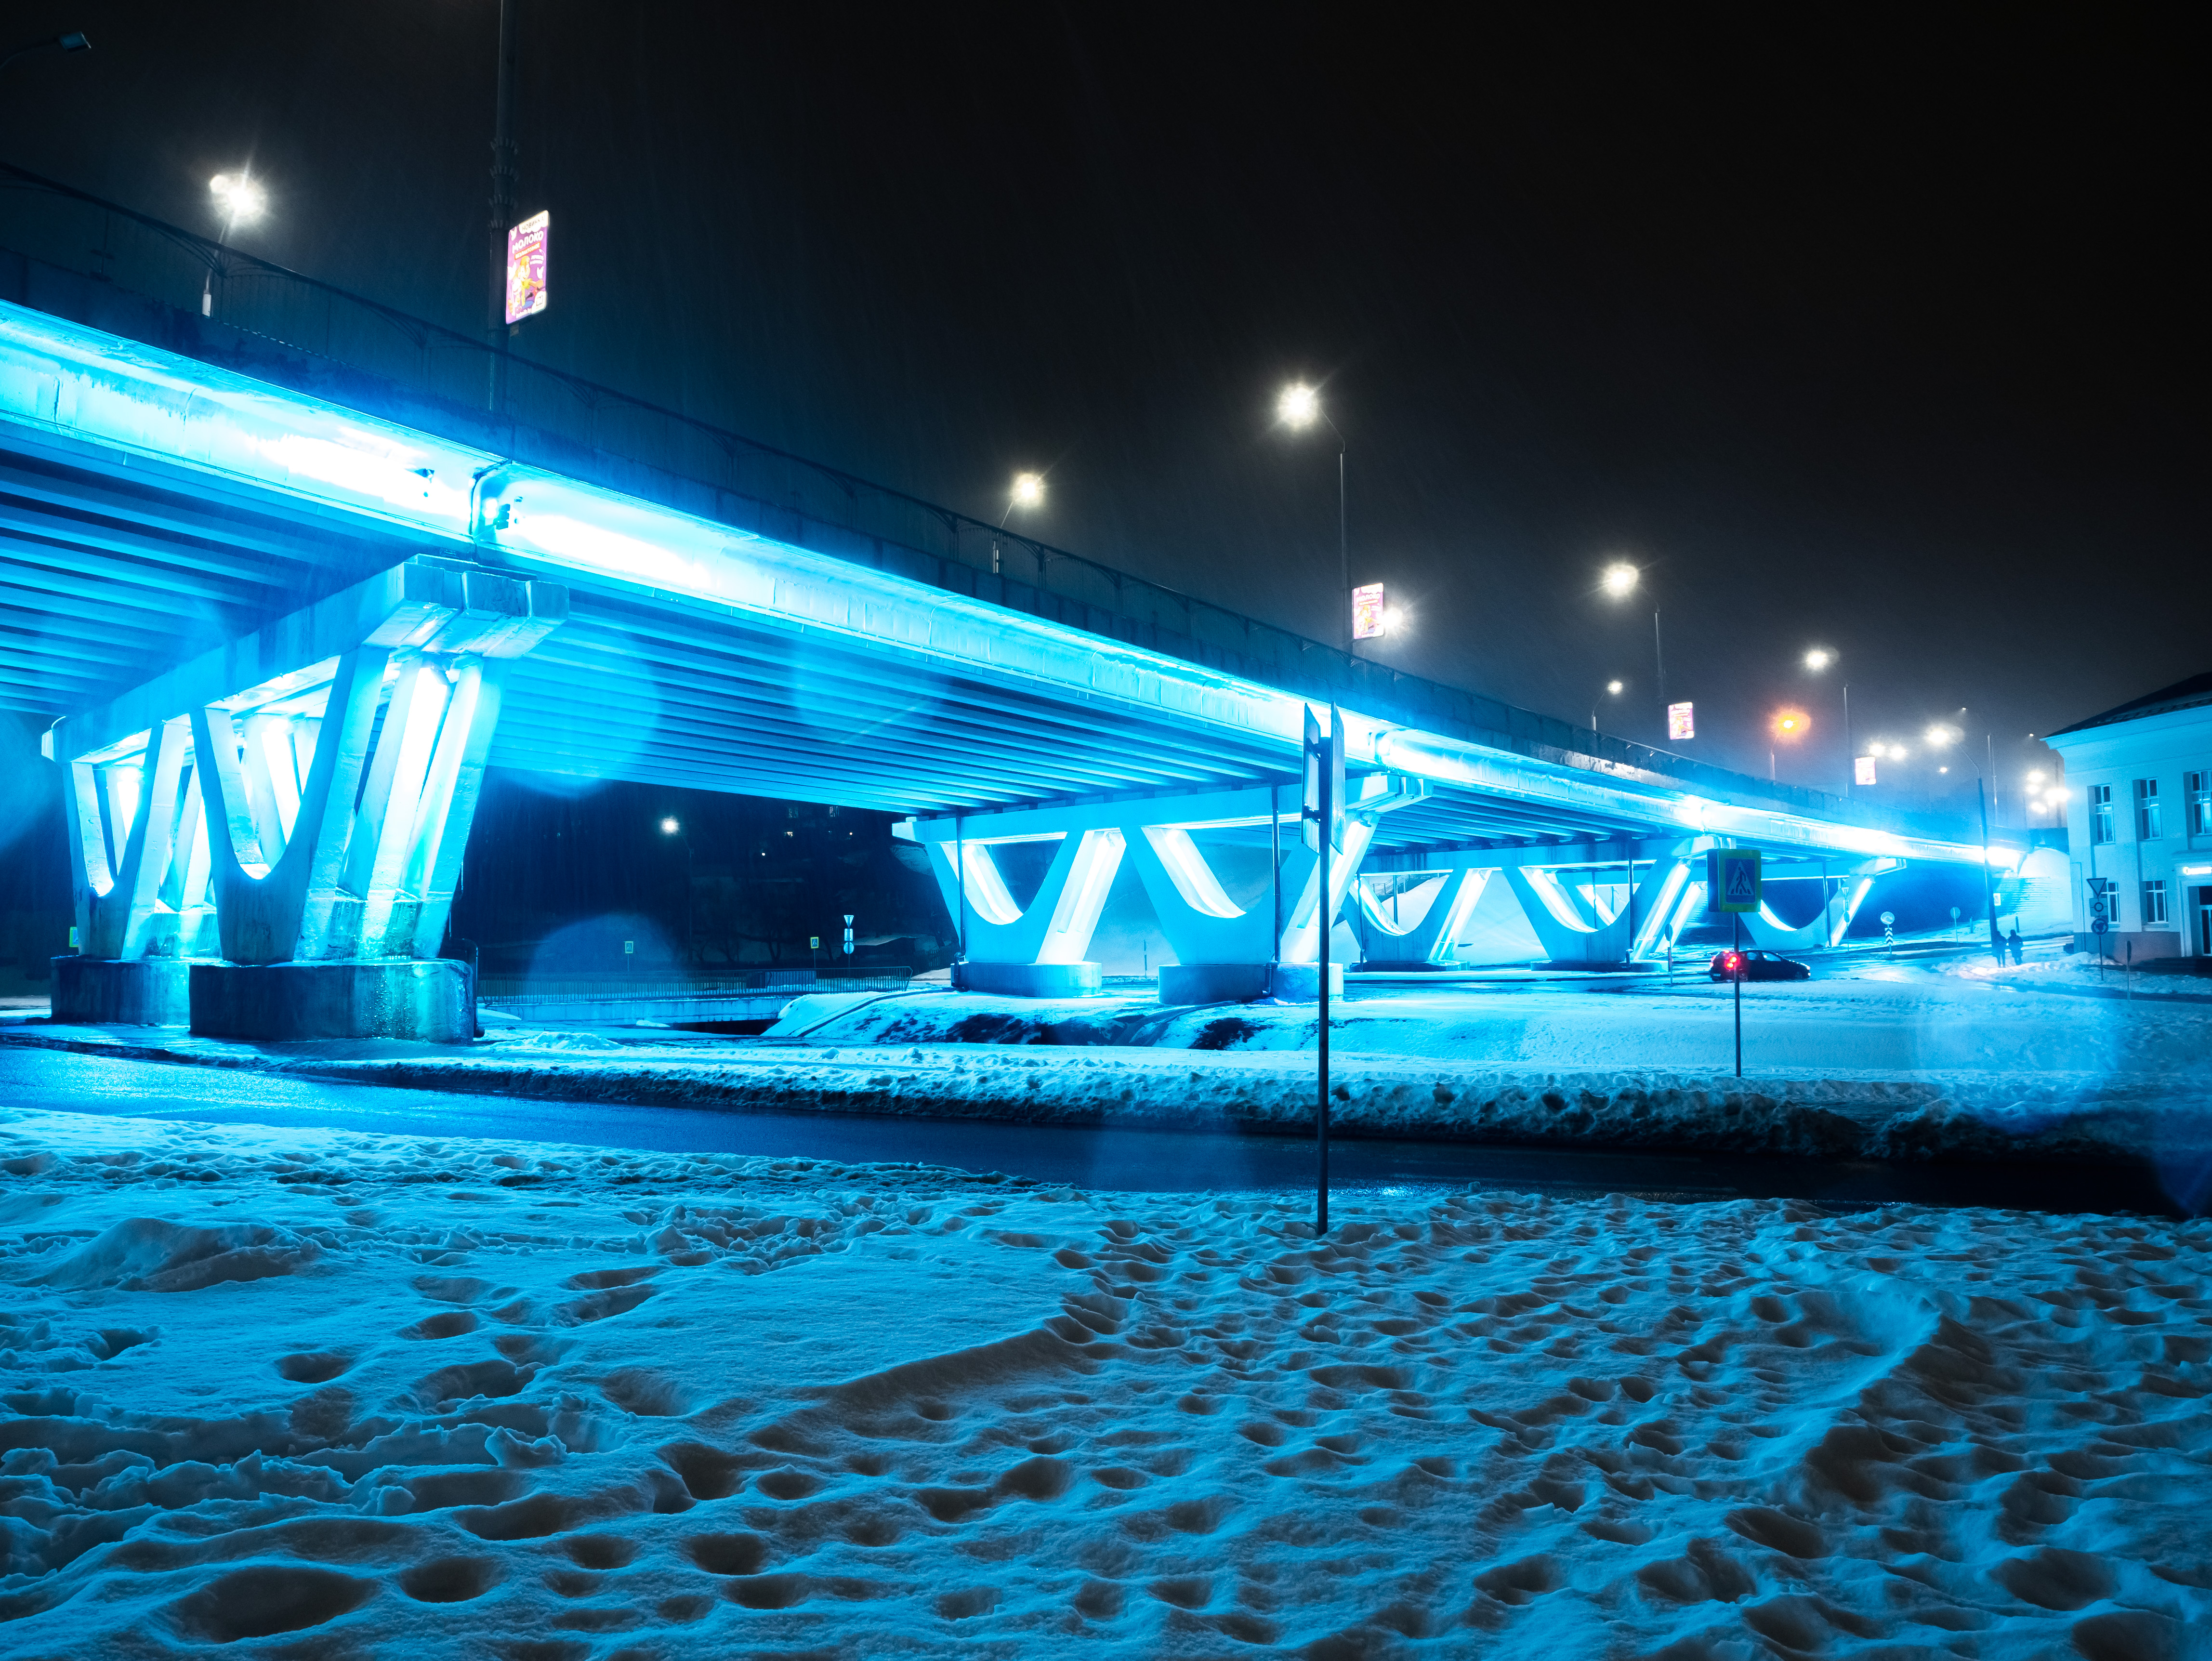 Архитектурная подсветка мостов